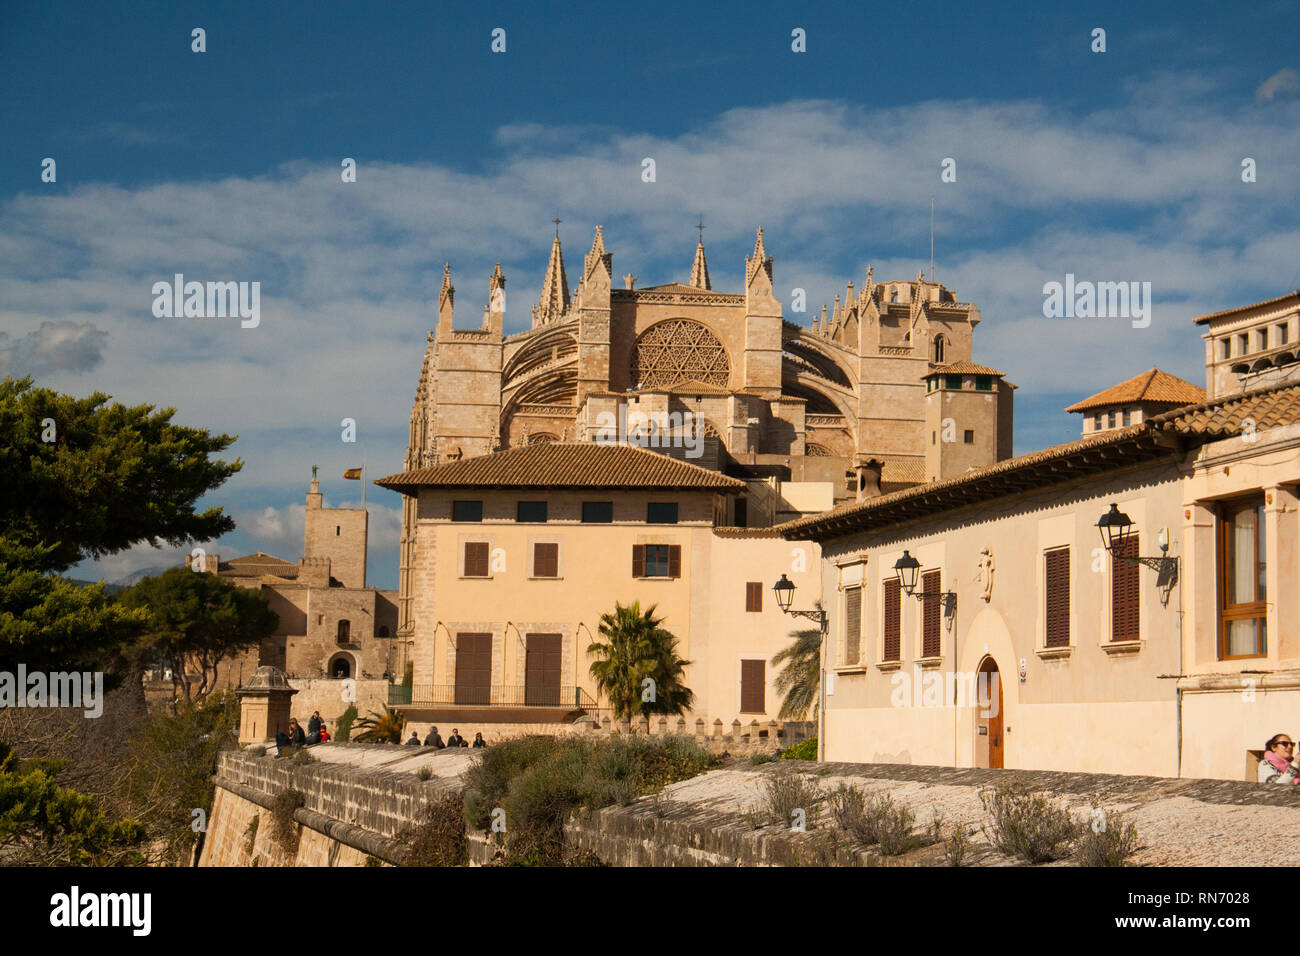 Cattedrale gotica La Seu in Palma de Mallorca, Spagna. Giornata di sole e cielo blu Foto Stock